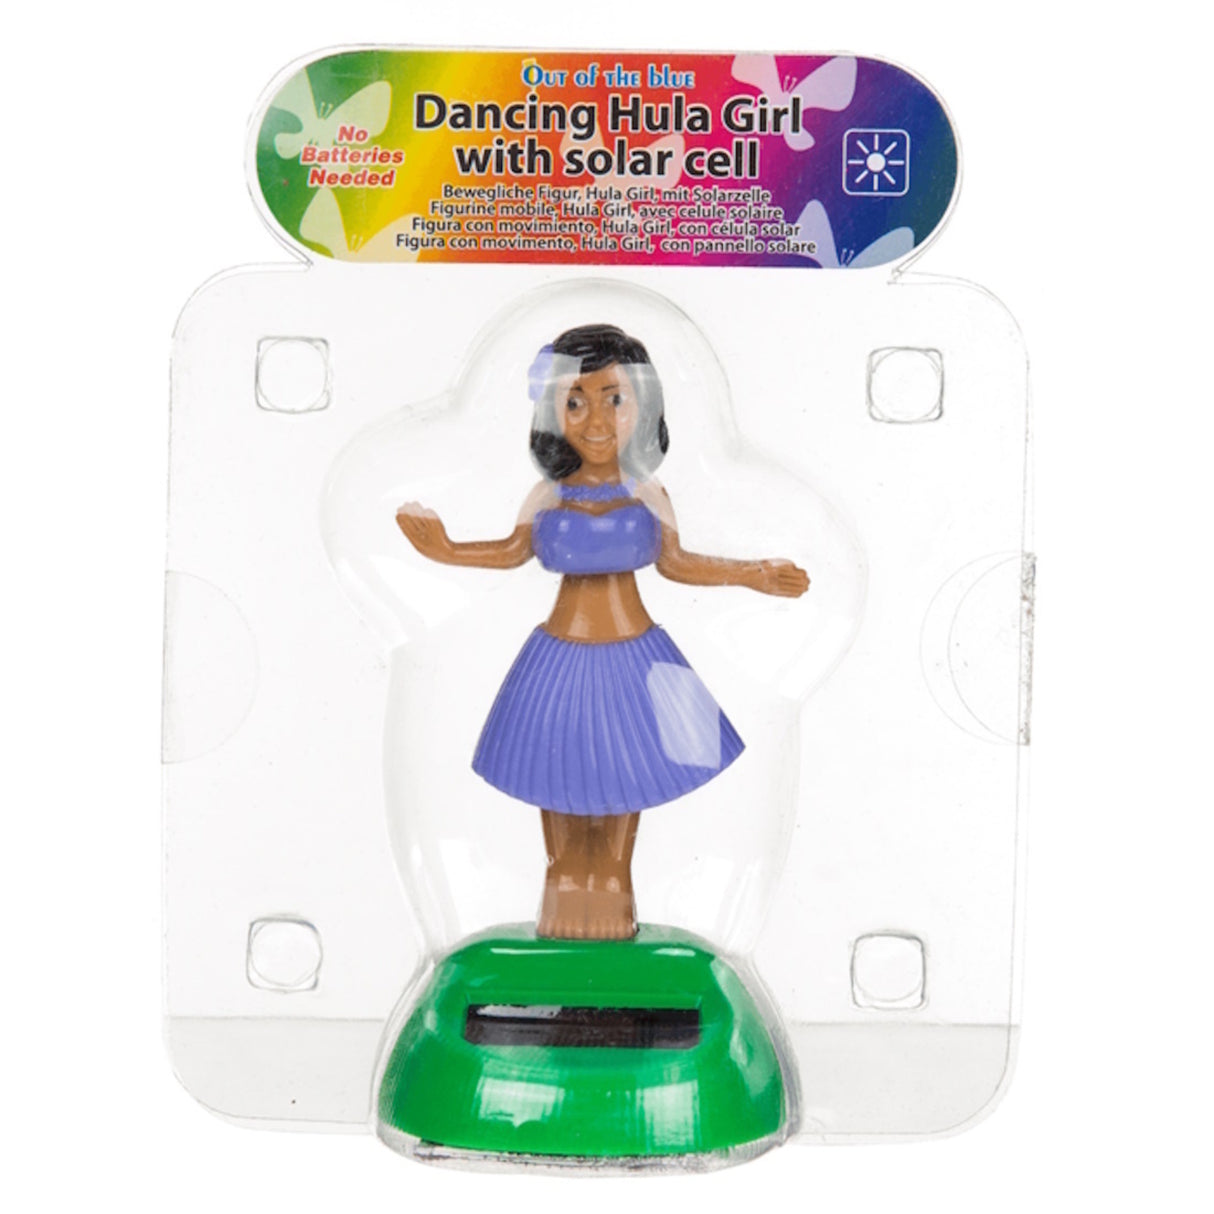 Tanzende Solarfigur Hula Girl - Jetzt kaufen und tanzen lassen! –